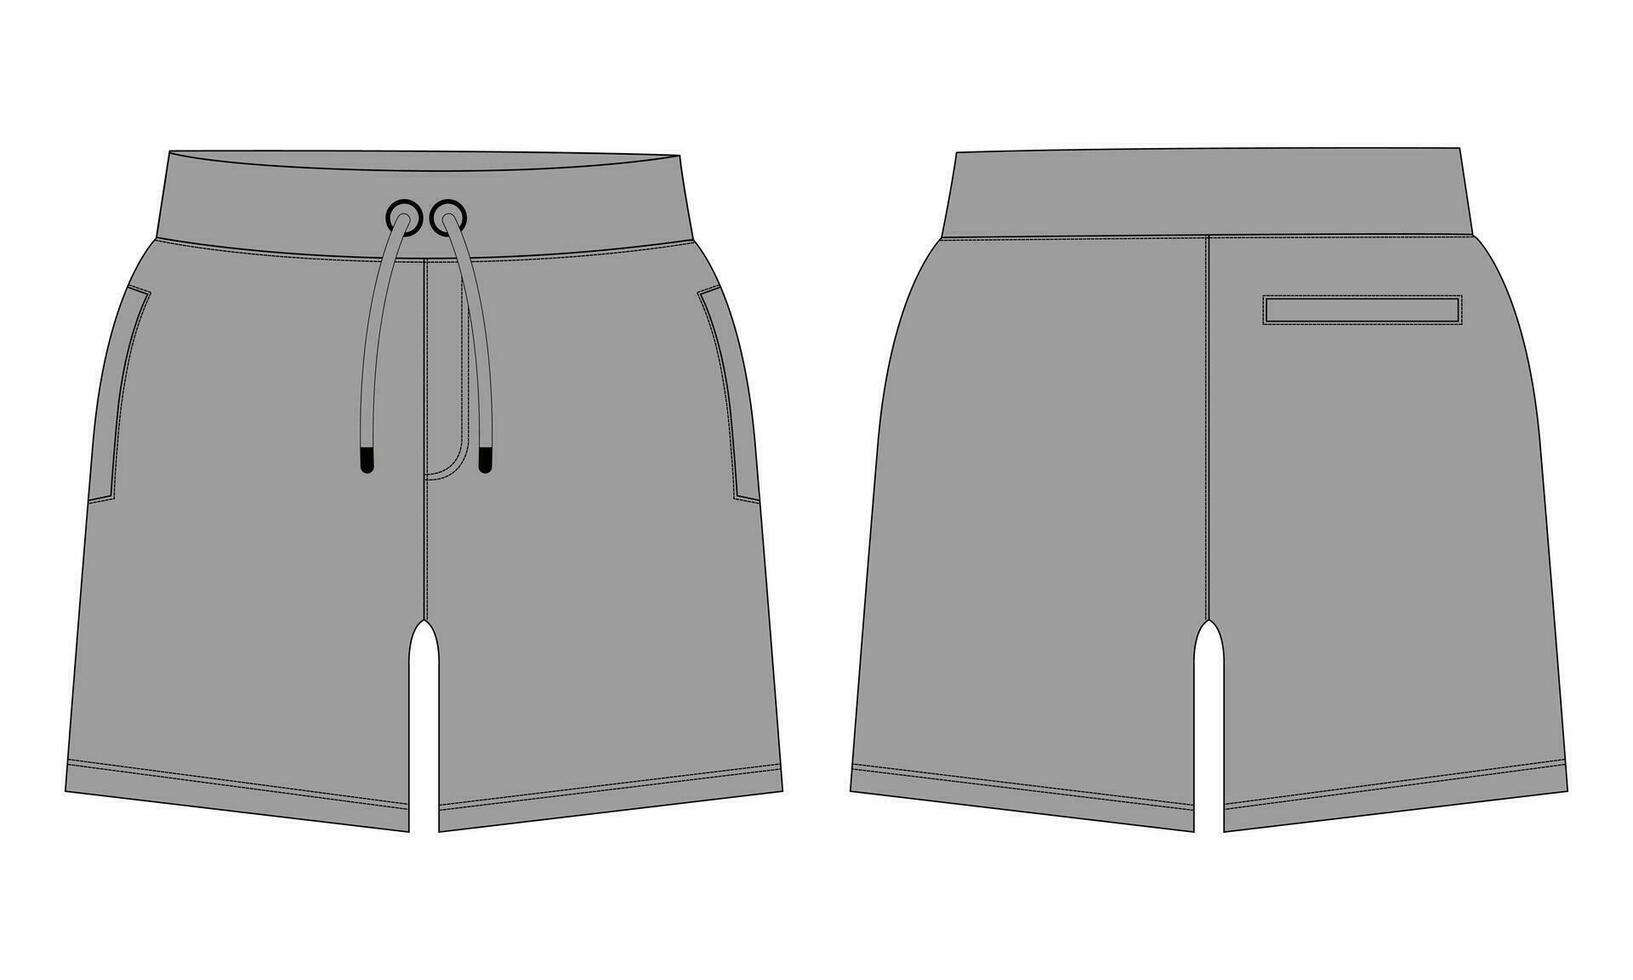 lana tela persona que practica jogging sudor pantalones cortos pantalones vector ilustración modelo frente, espalda puntos de vista